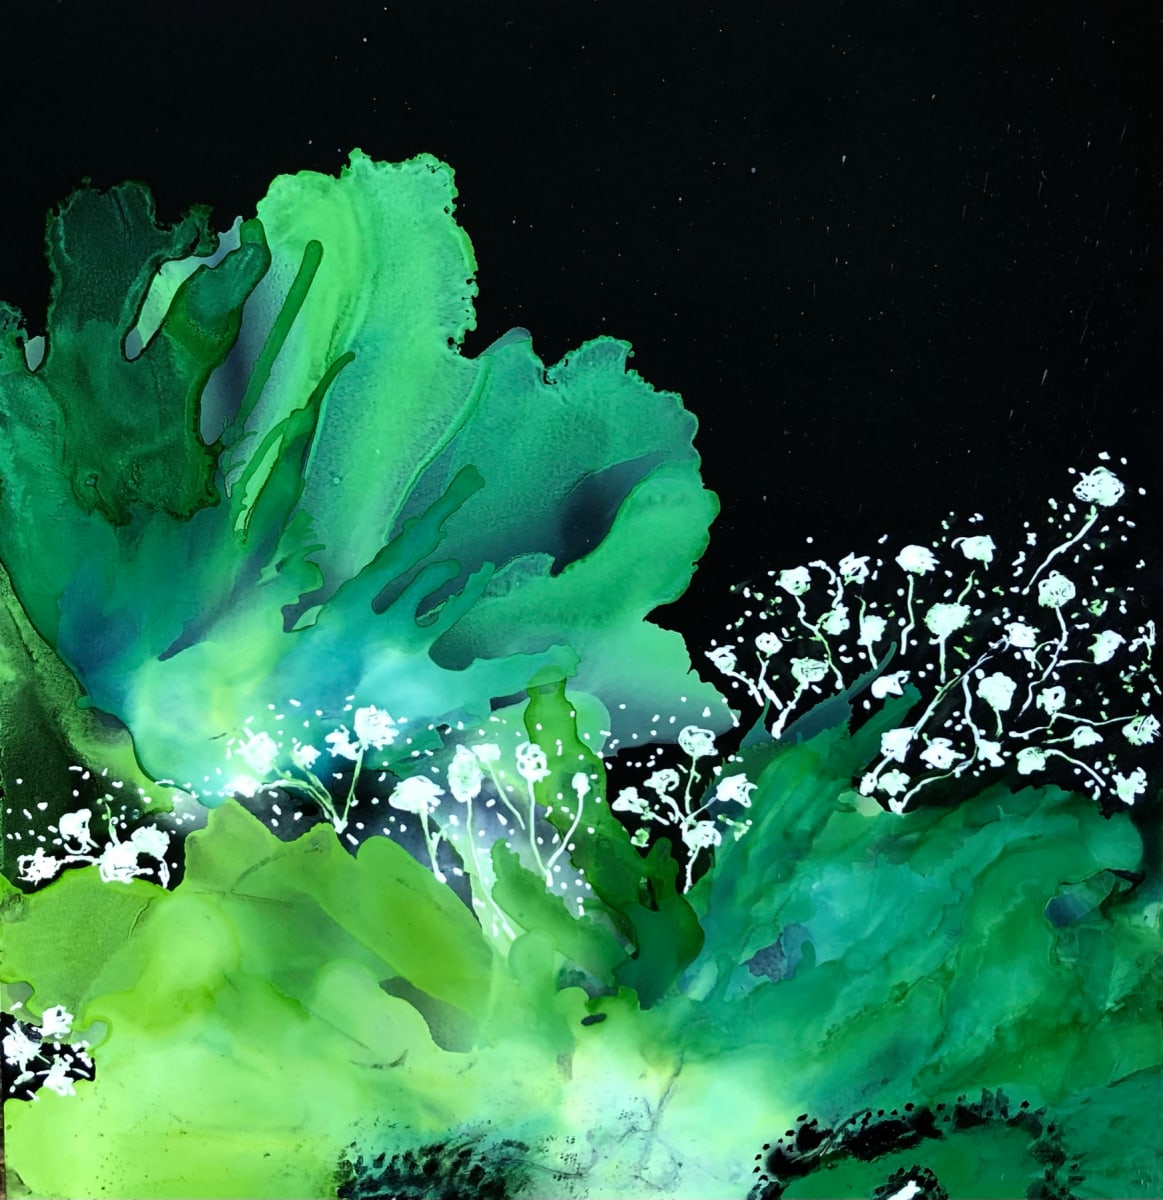 Green Floral Fantasy - Stretched Canvas Print by Debbi Estes 